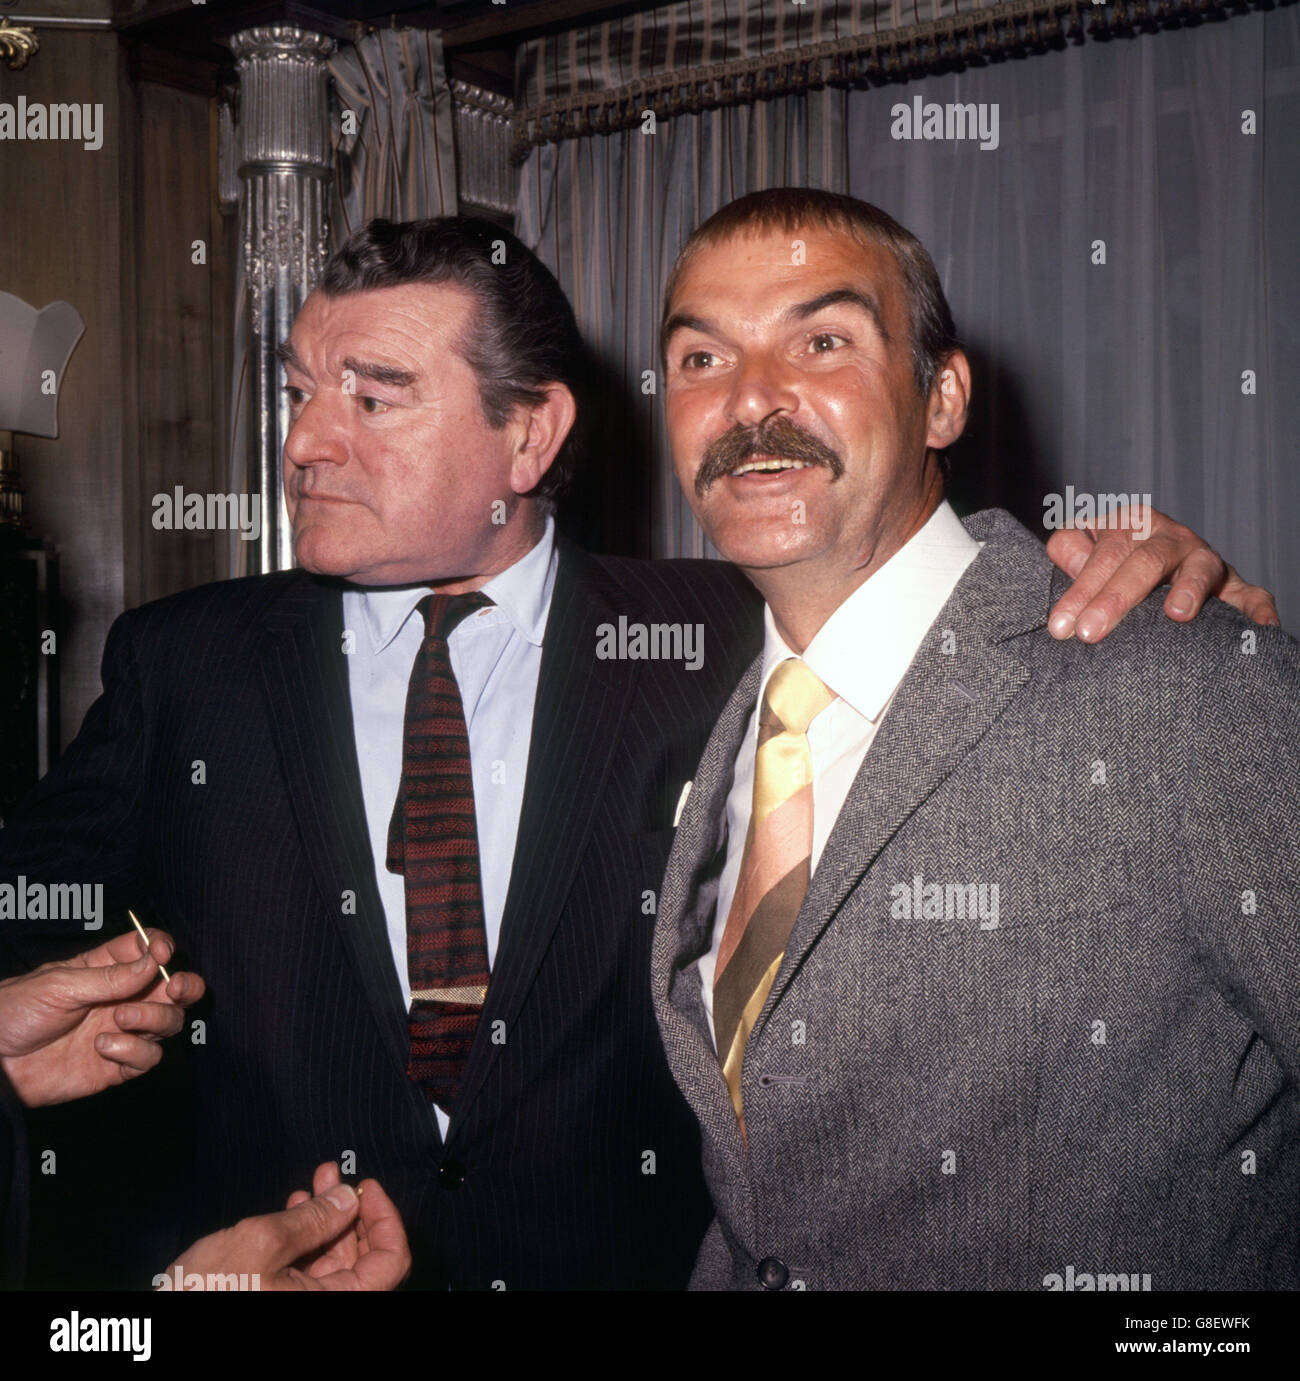 Intrattenimento - Jack Hawkins. L'attore britannico Jack Hawkins (l), raffigurato con il compagno di attore Stanley Baker (r) ad un evento a Londra. Foto Stock